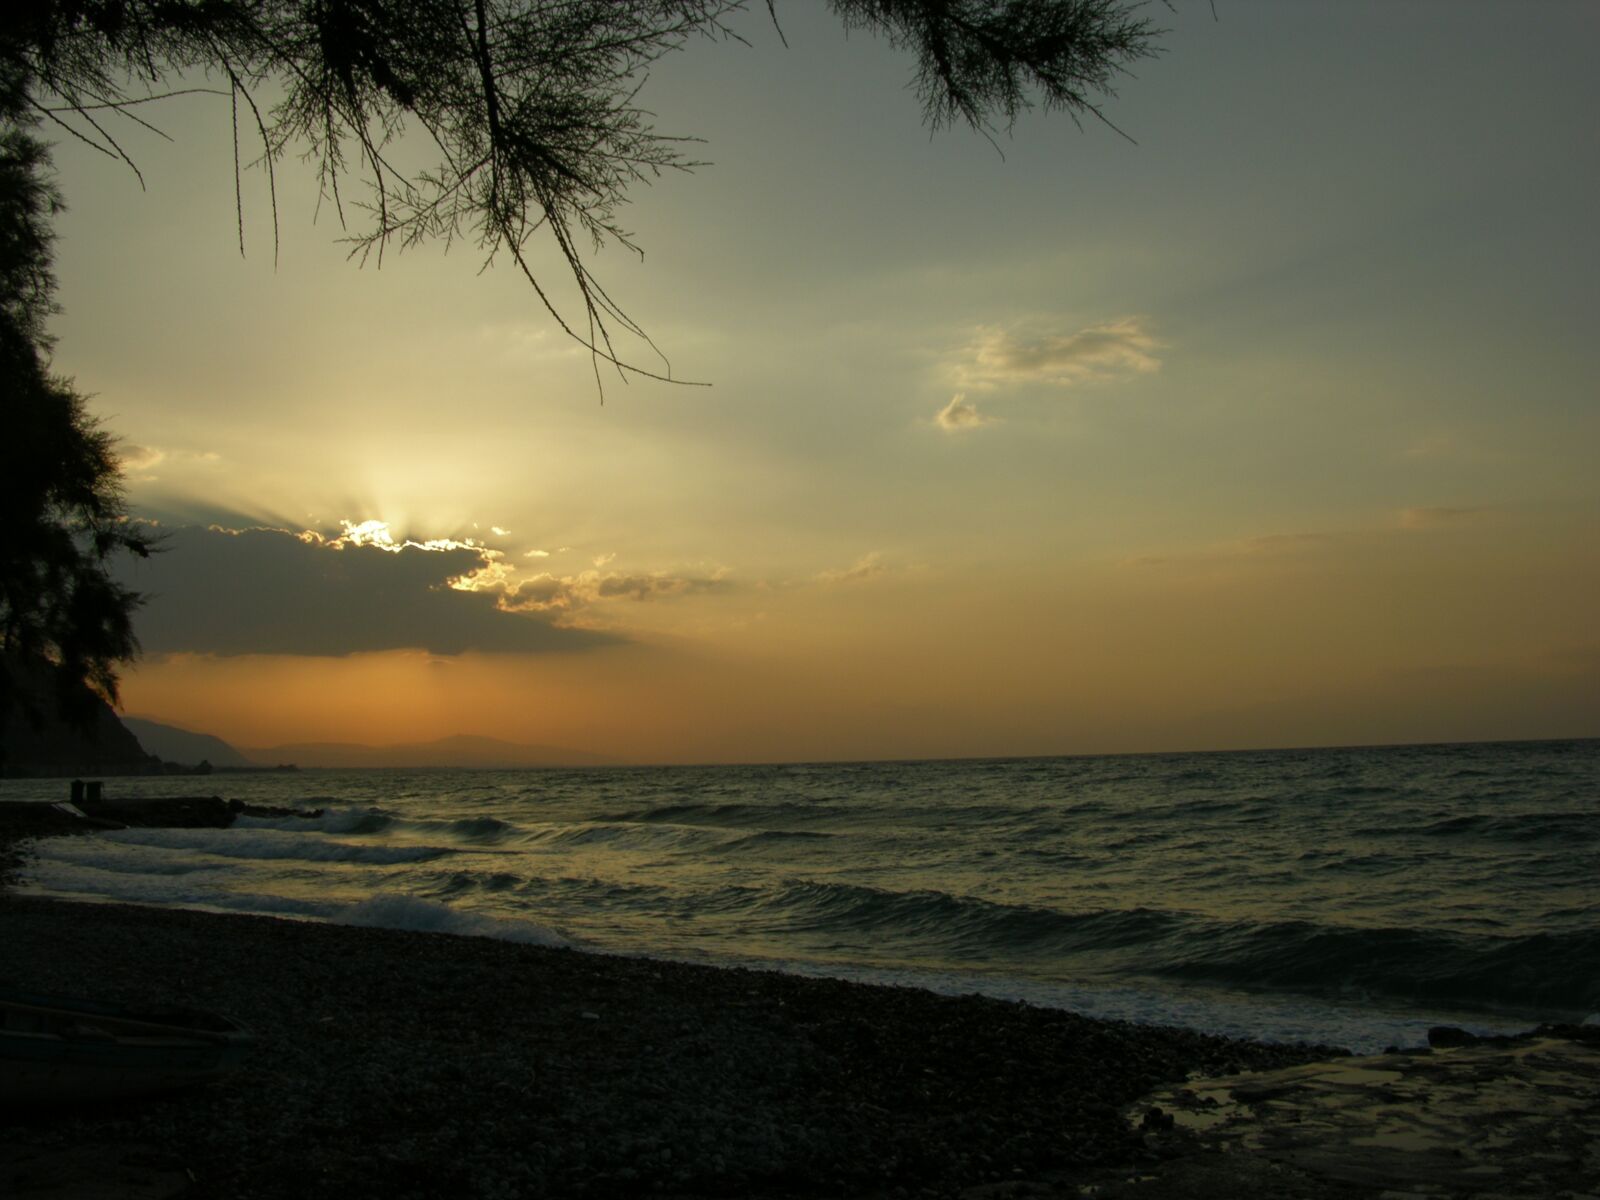 Nikon E8700 sample photo. Nature, sunset, sea photography